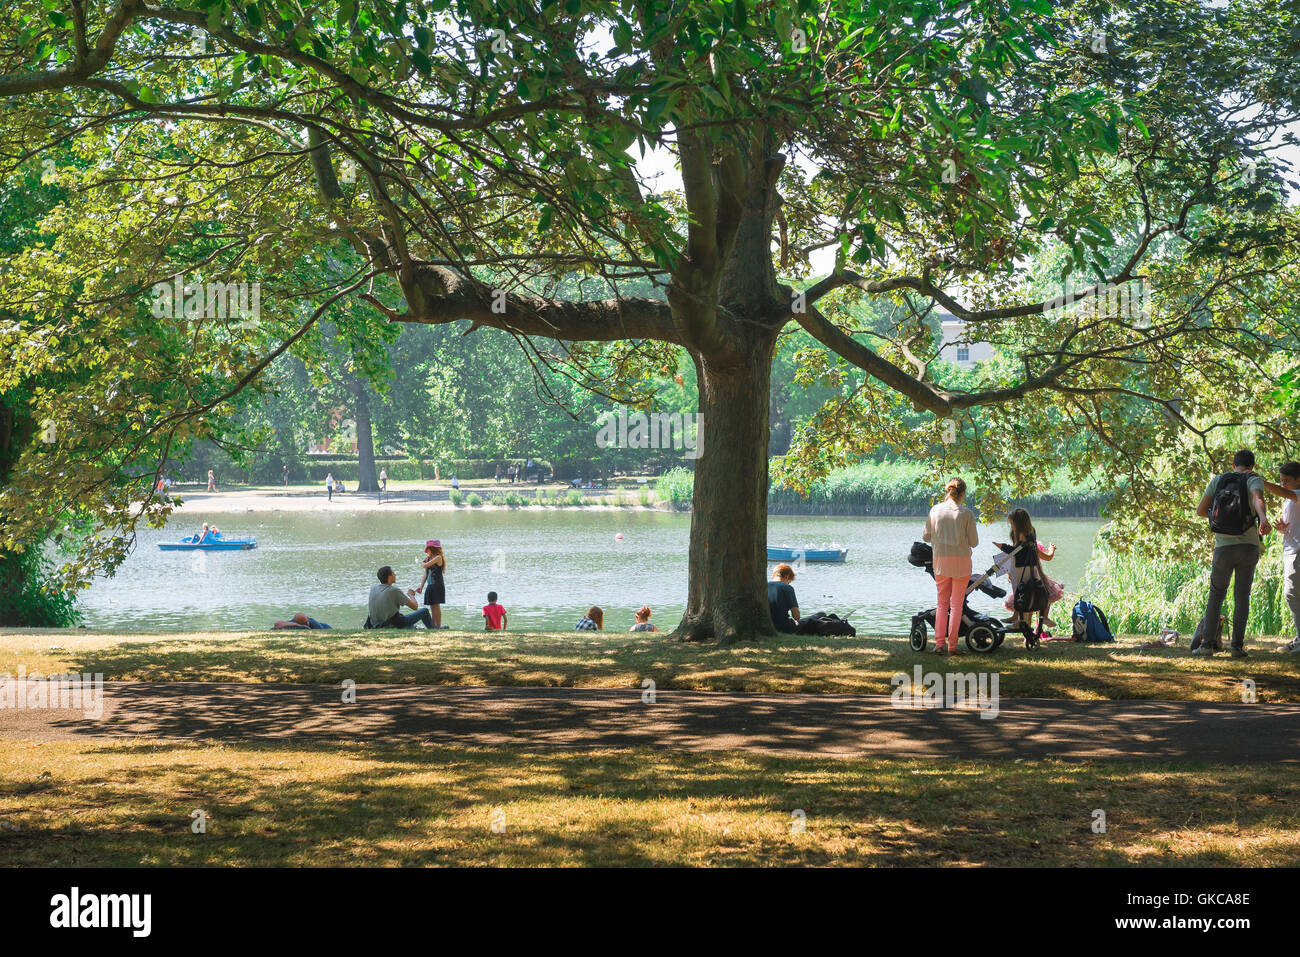 Pique-nique en famille Londres, vue sur un après-midi d'été de touristes ayant un pique-nique à côté du lac de plaisance de Regent's Park, London, UK. Banque D'Images